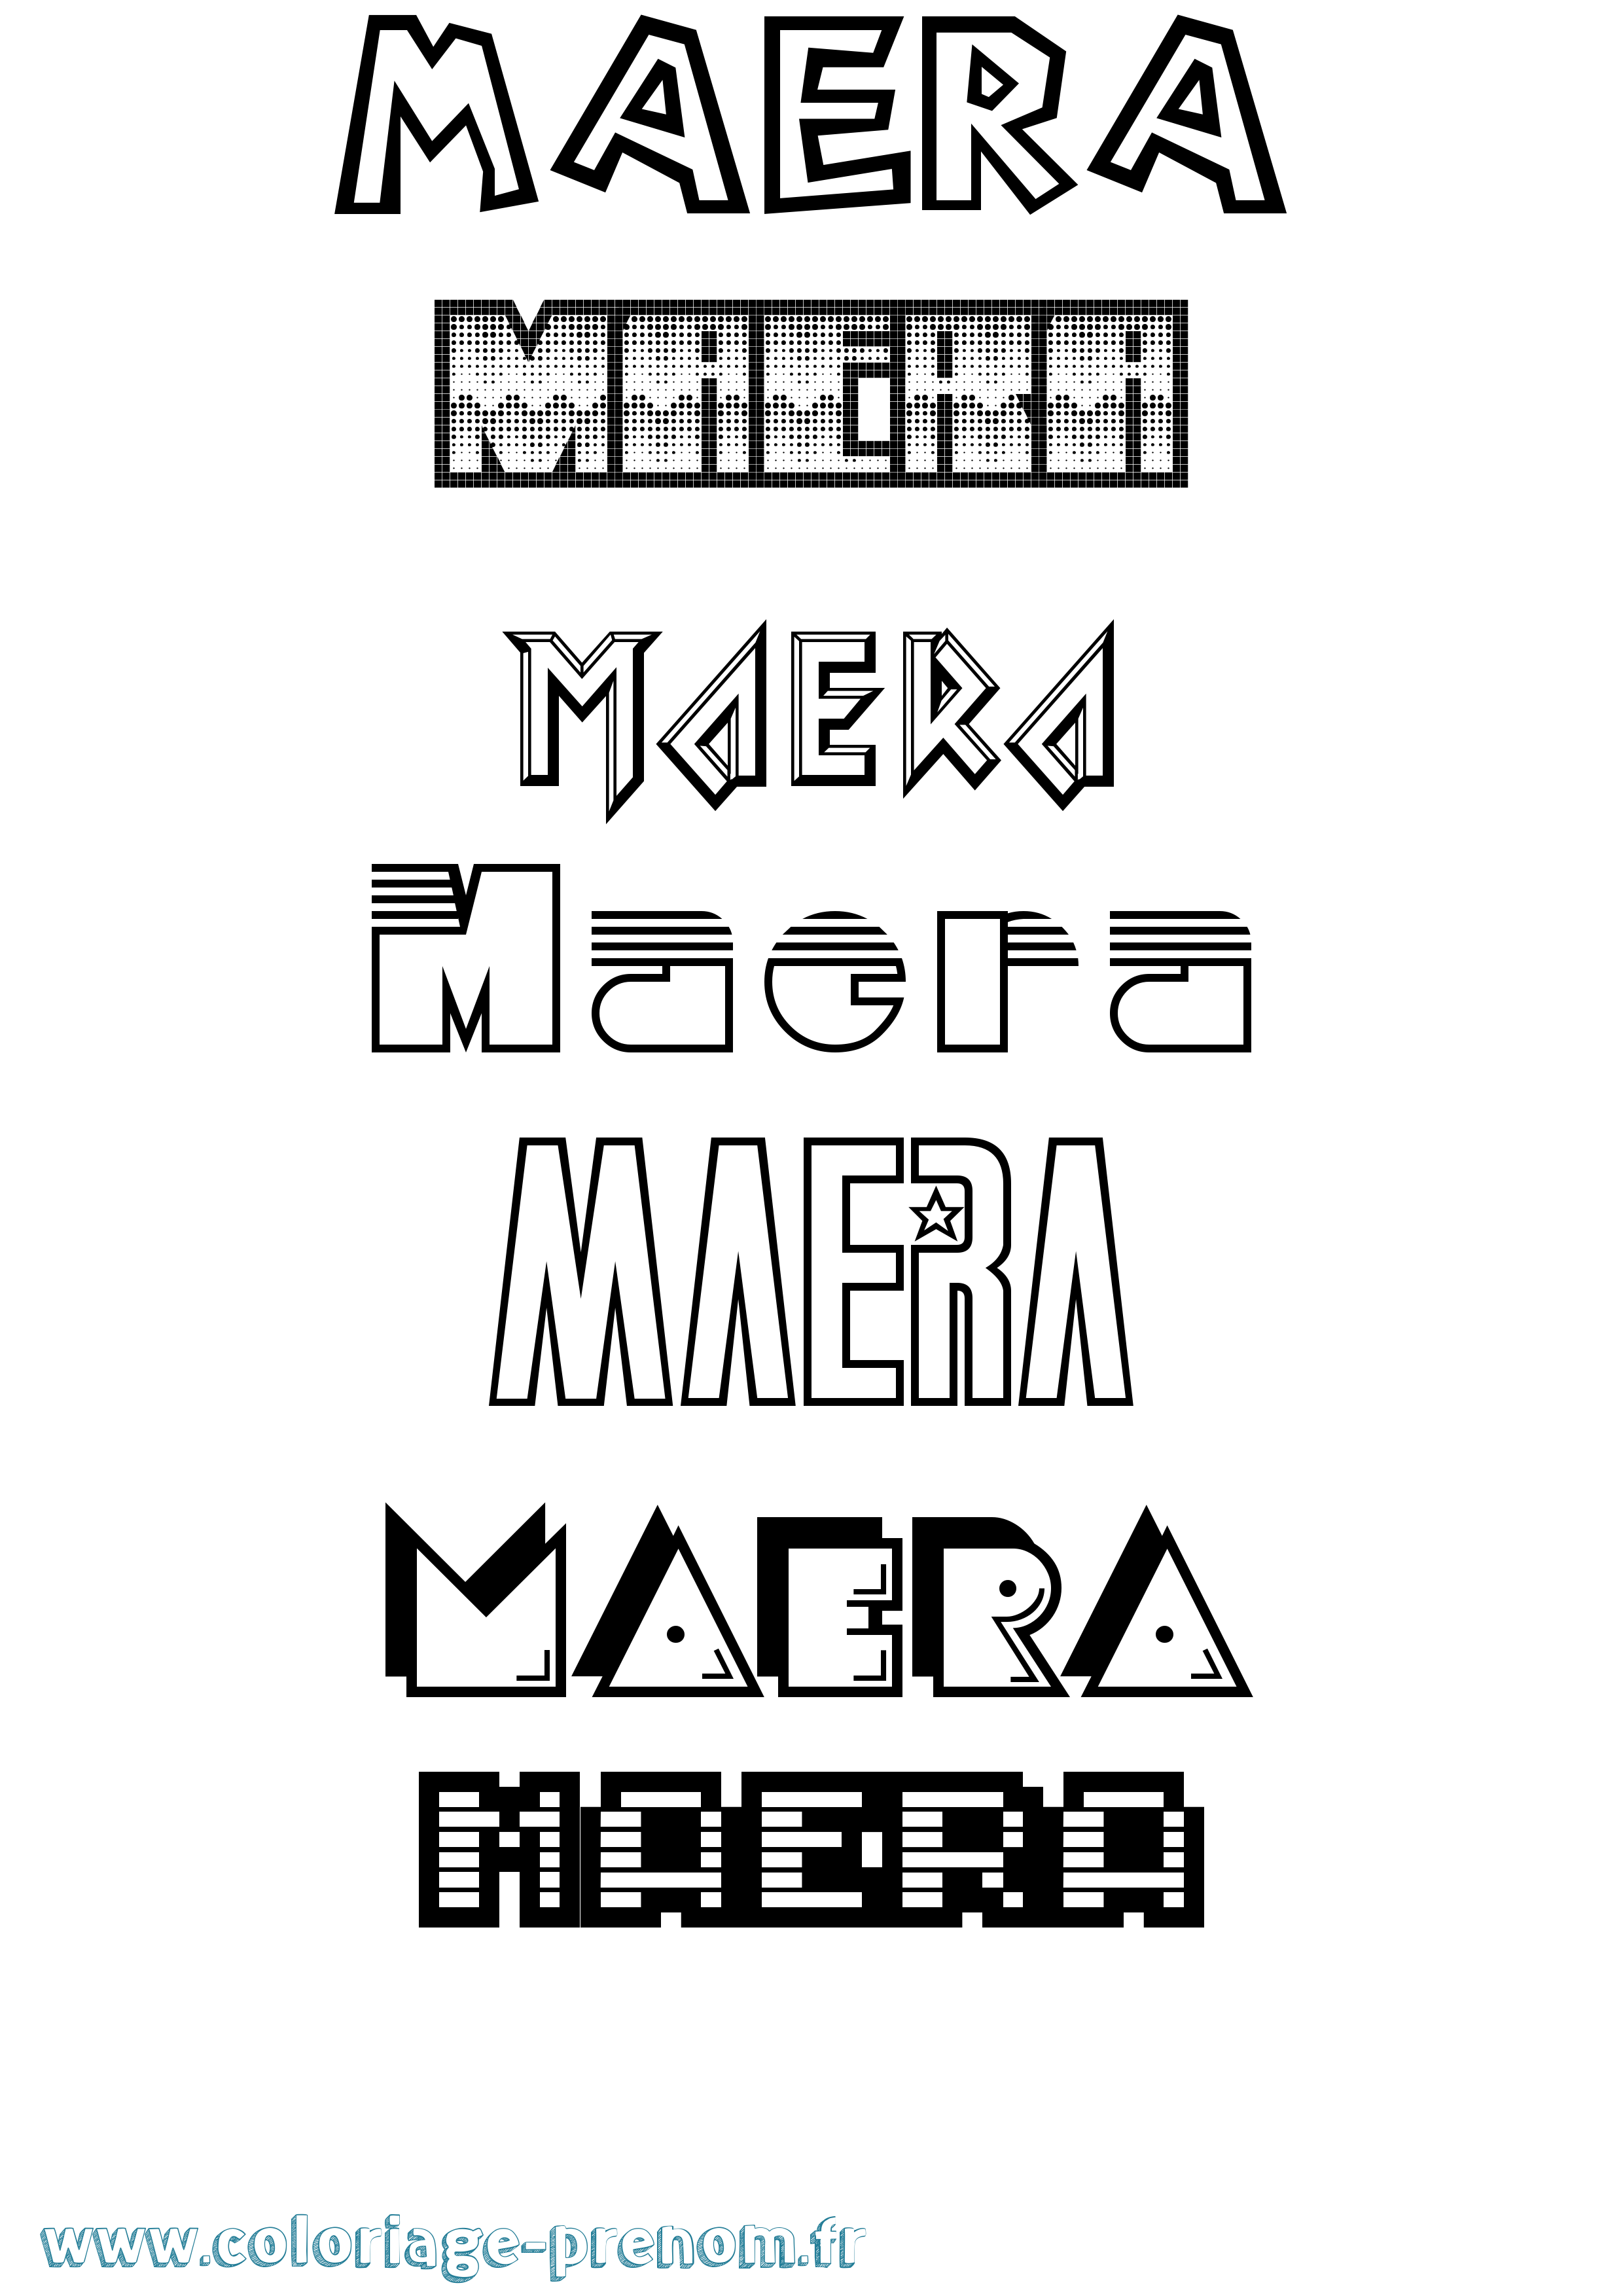 Coloriage prénom Maera Jeux Vidéos